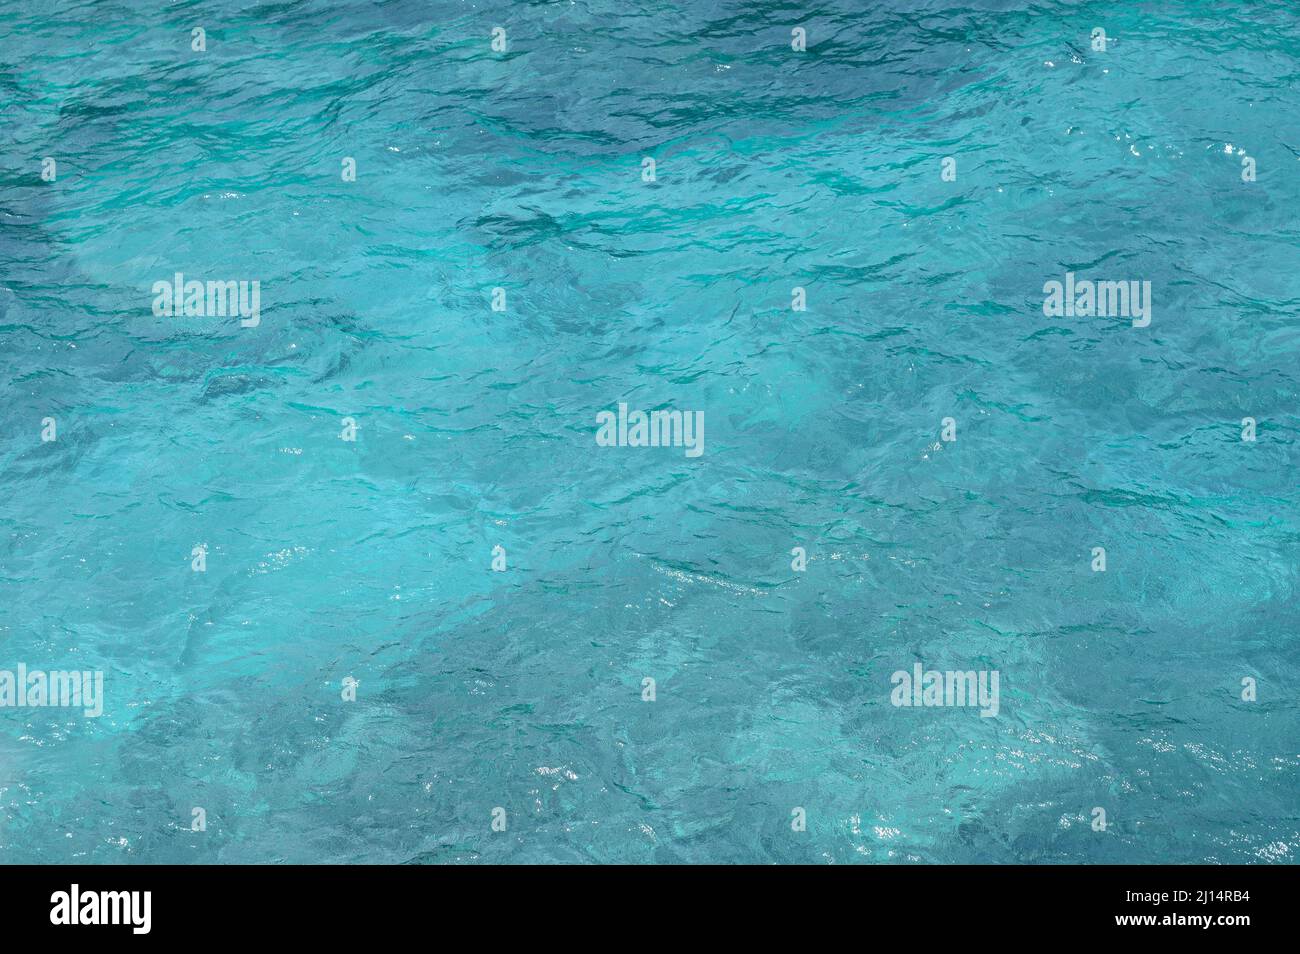 Foto zeigt Textur des Ozeans. Die Oberfläche des Meeres ist türkis. Ozeanwasser Muster ist hell und in verschiedenen Blautönen. Hintergrund des Meerwassers ist tr Stockfoto